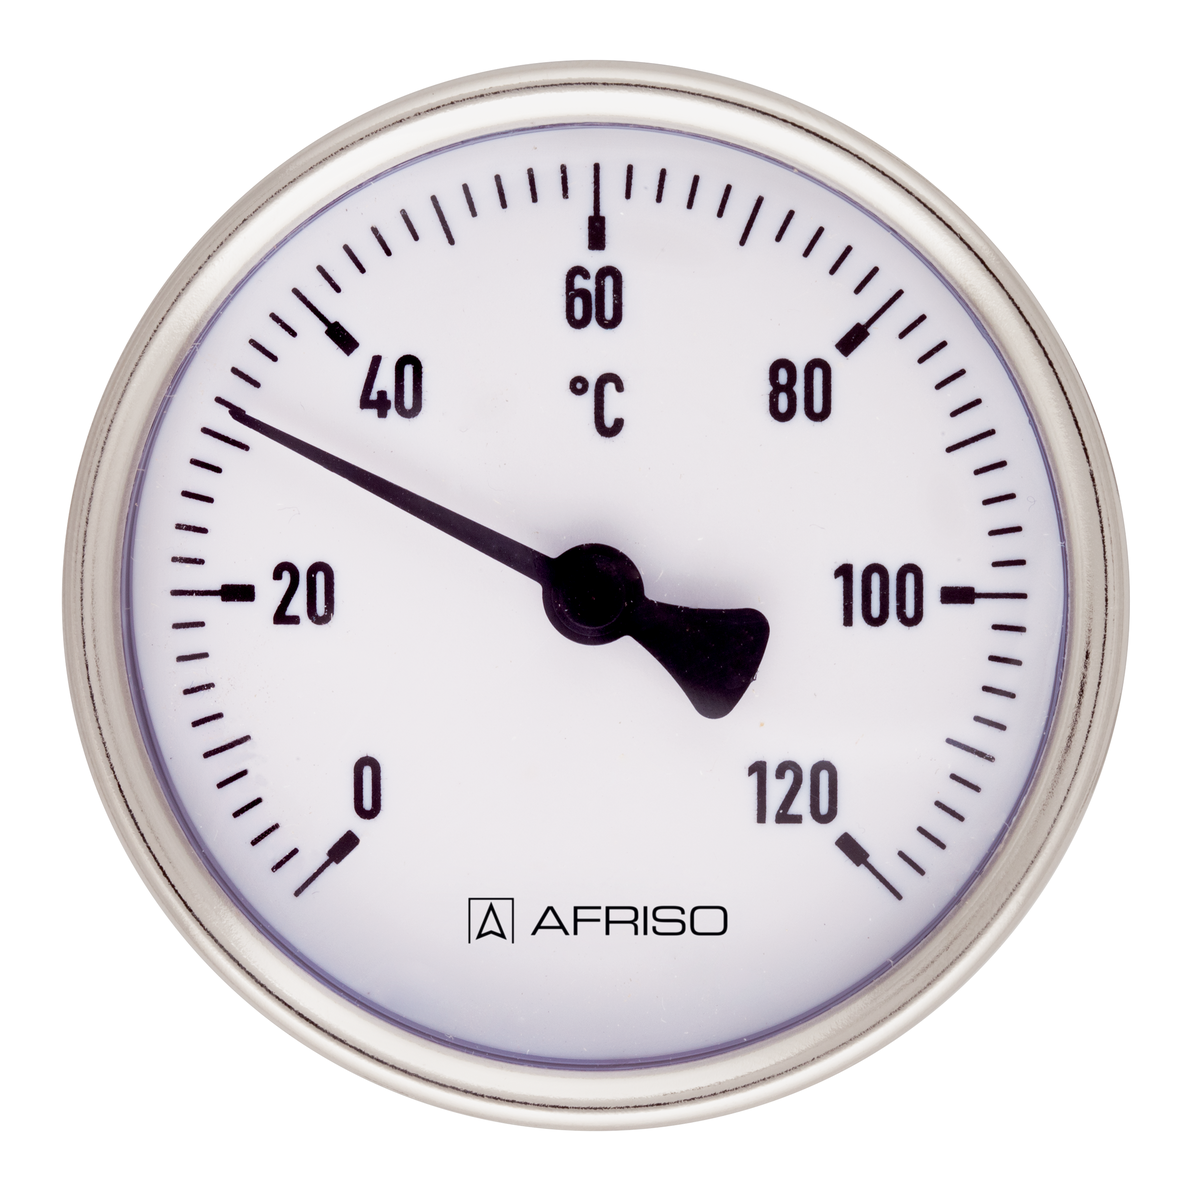 Bimetalový teploměr BiTh 80 ST, Ø 80 mm, -20 ÷ 60 °C, délka jímky 150 mm, G½", axiální - AFRISO.CZ